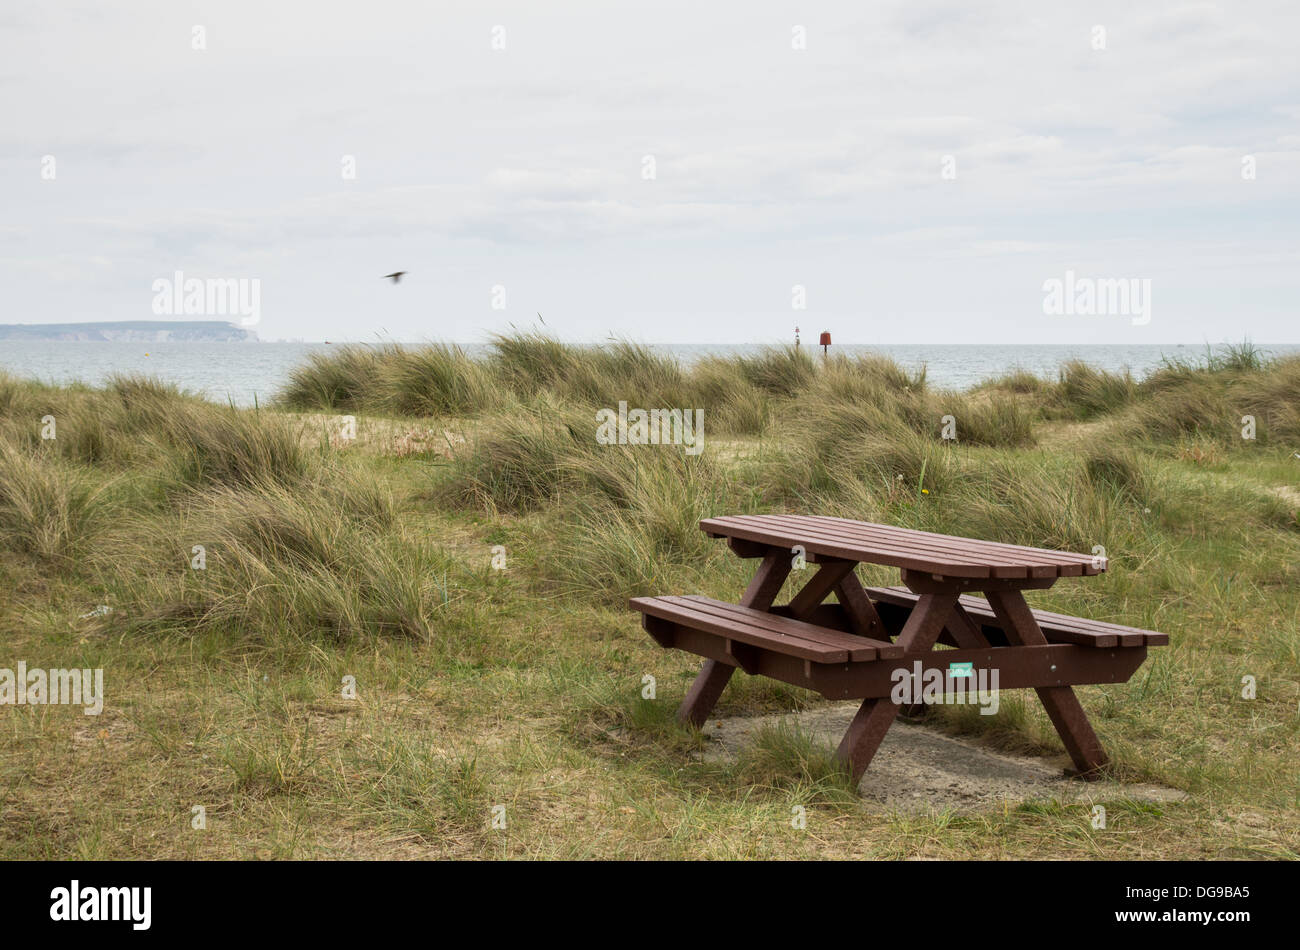 Testa Hengistbury fuori stagione scena sulla spiaggia con un vuoto Tavolo picnic in erba secca, nuvole grigie e Isola di Wight in distanza. Foto Stock